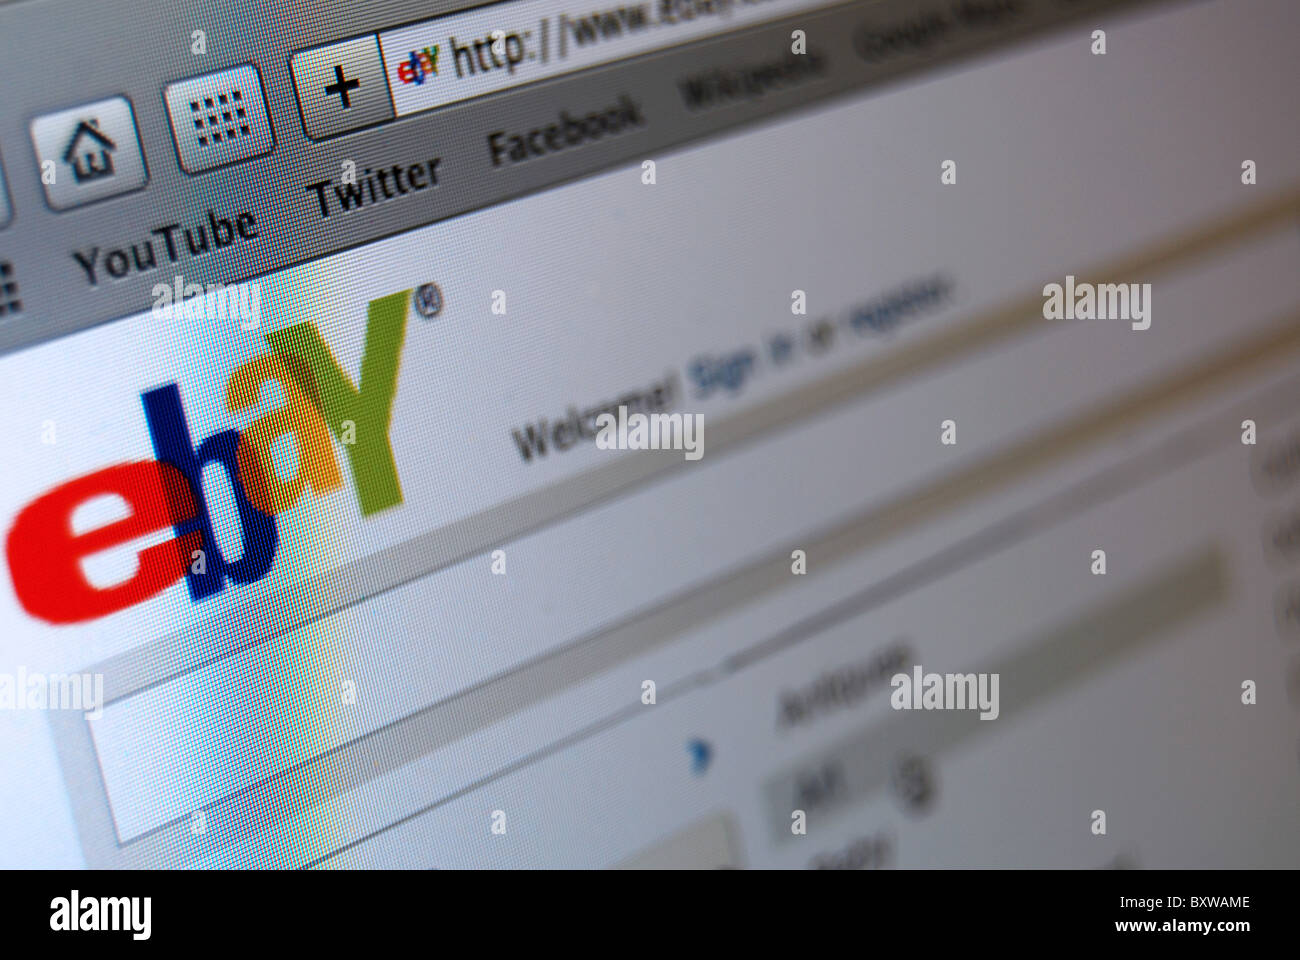 Foto-Illustration der Ebay-Website 2011 Stockfoto